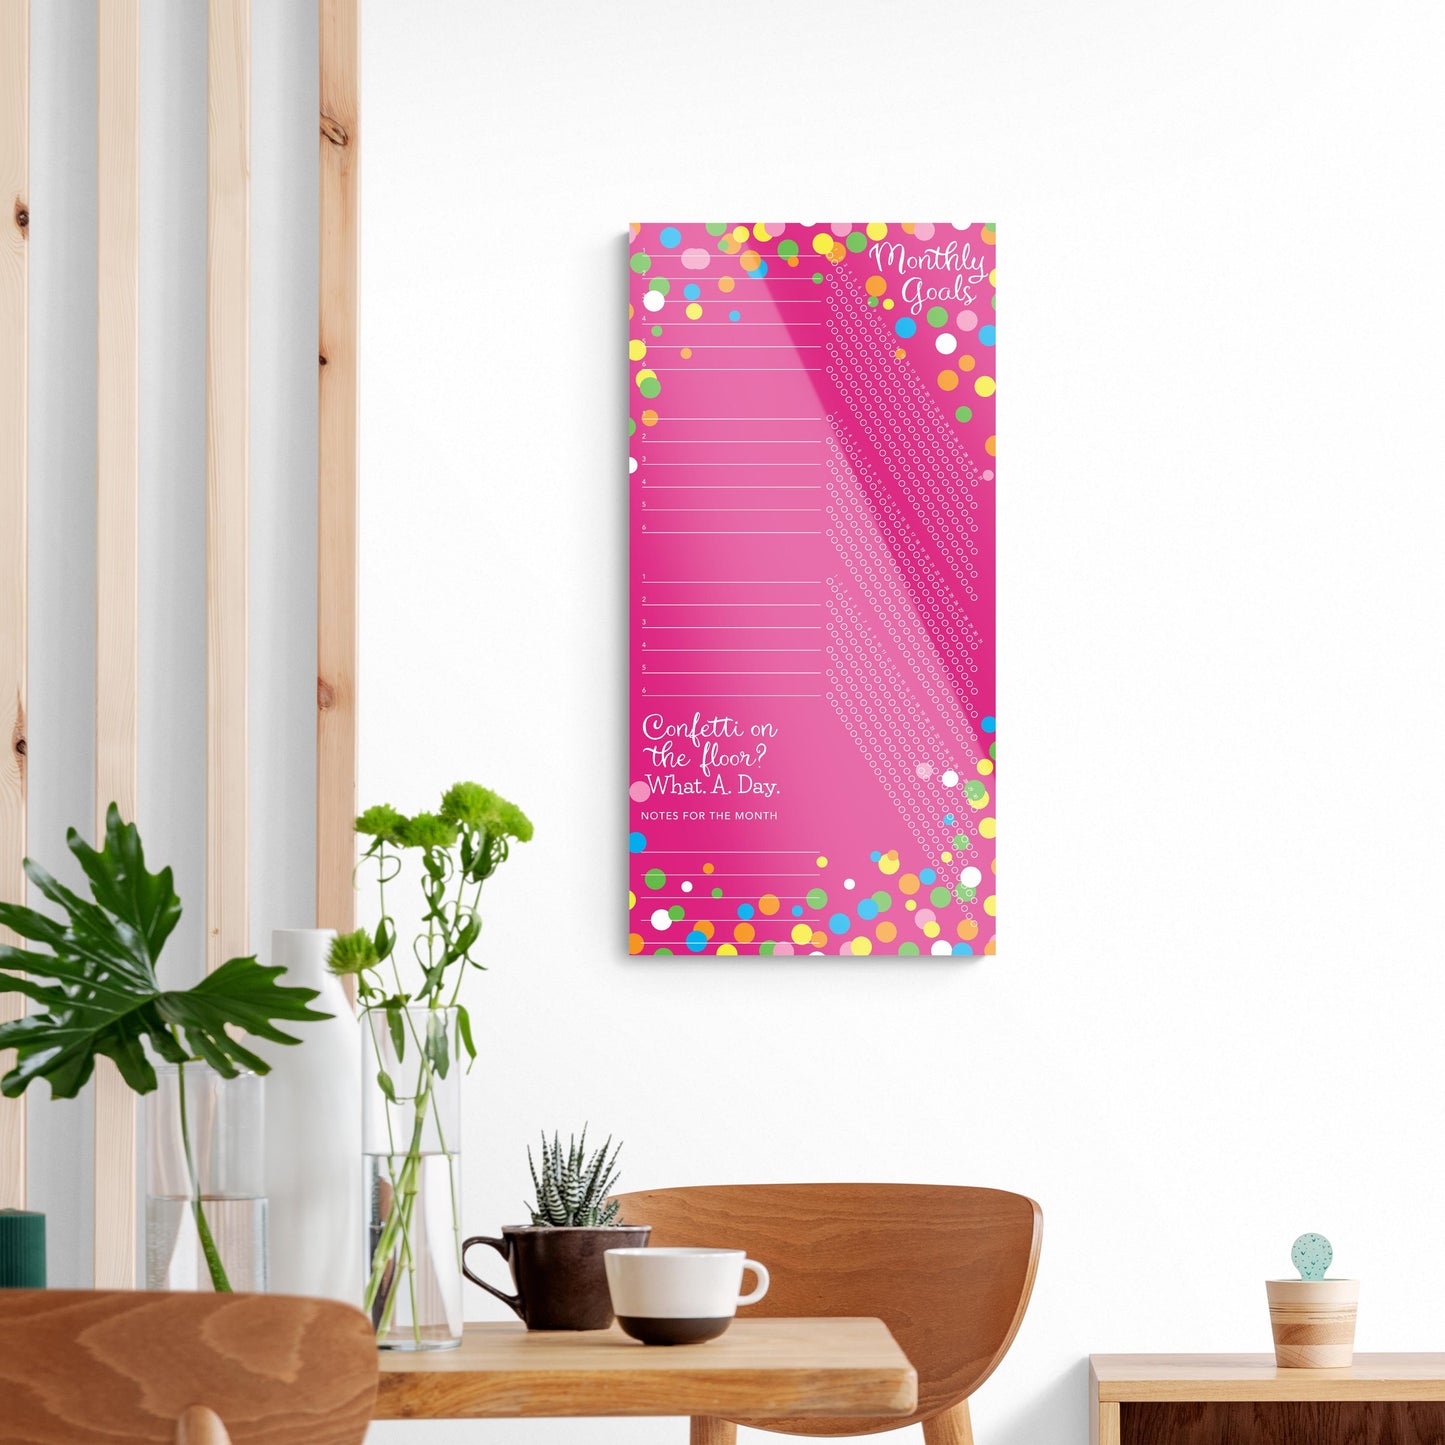 Pink Confetti Habit Tracker | 18x36